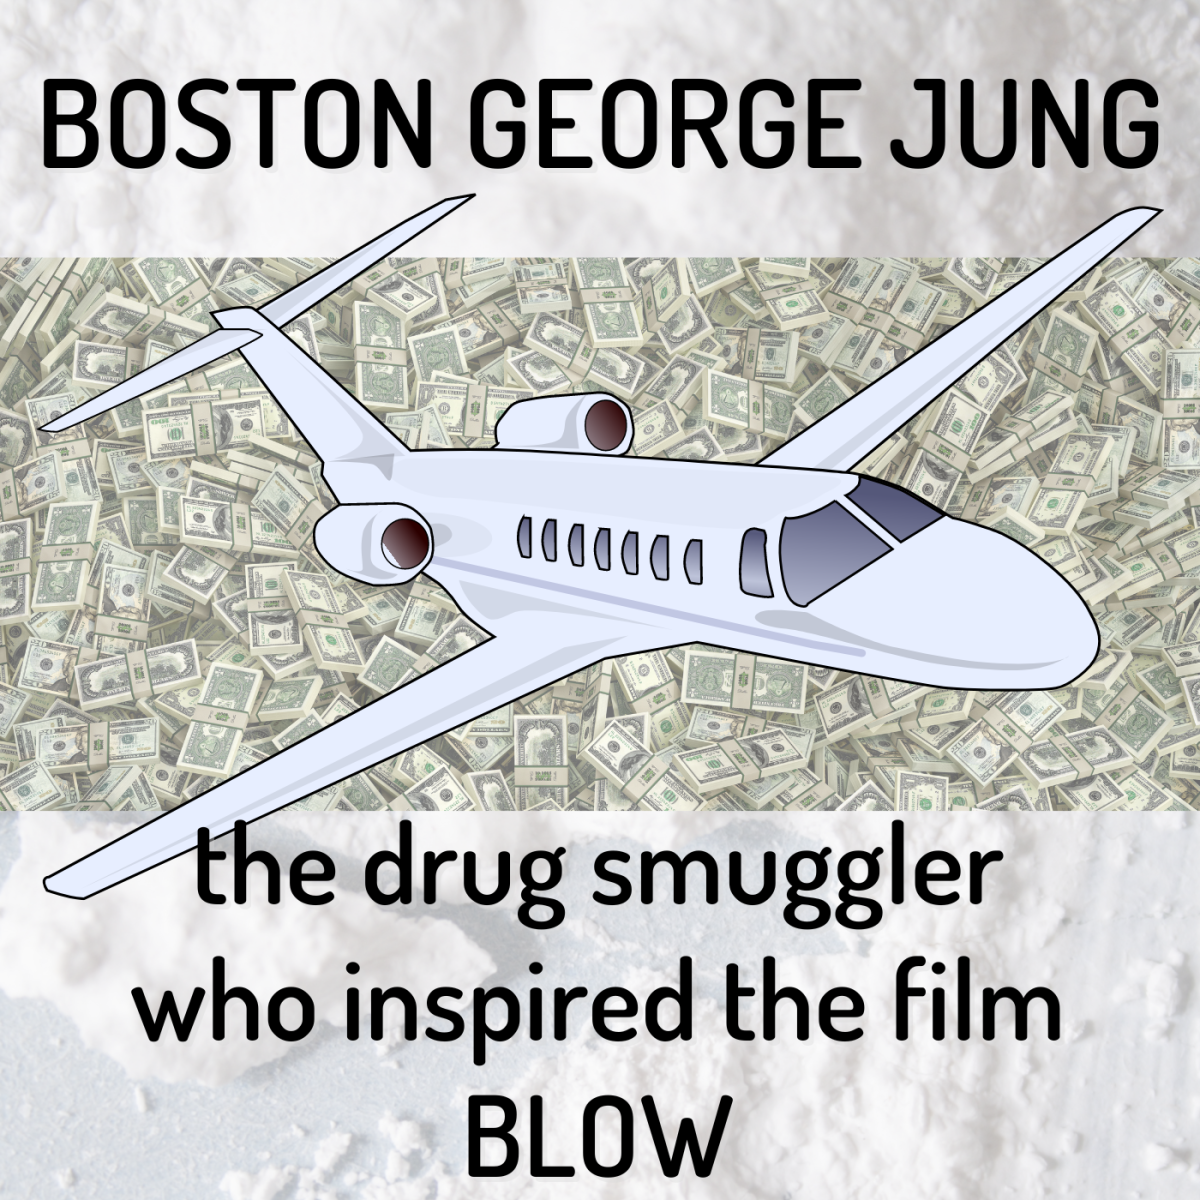 Boston George Jung: The Drug Smuggler Behind 